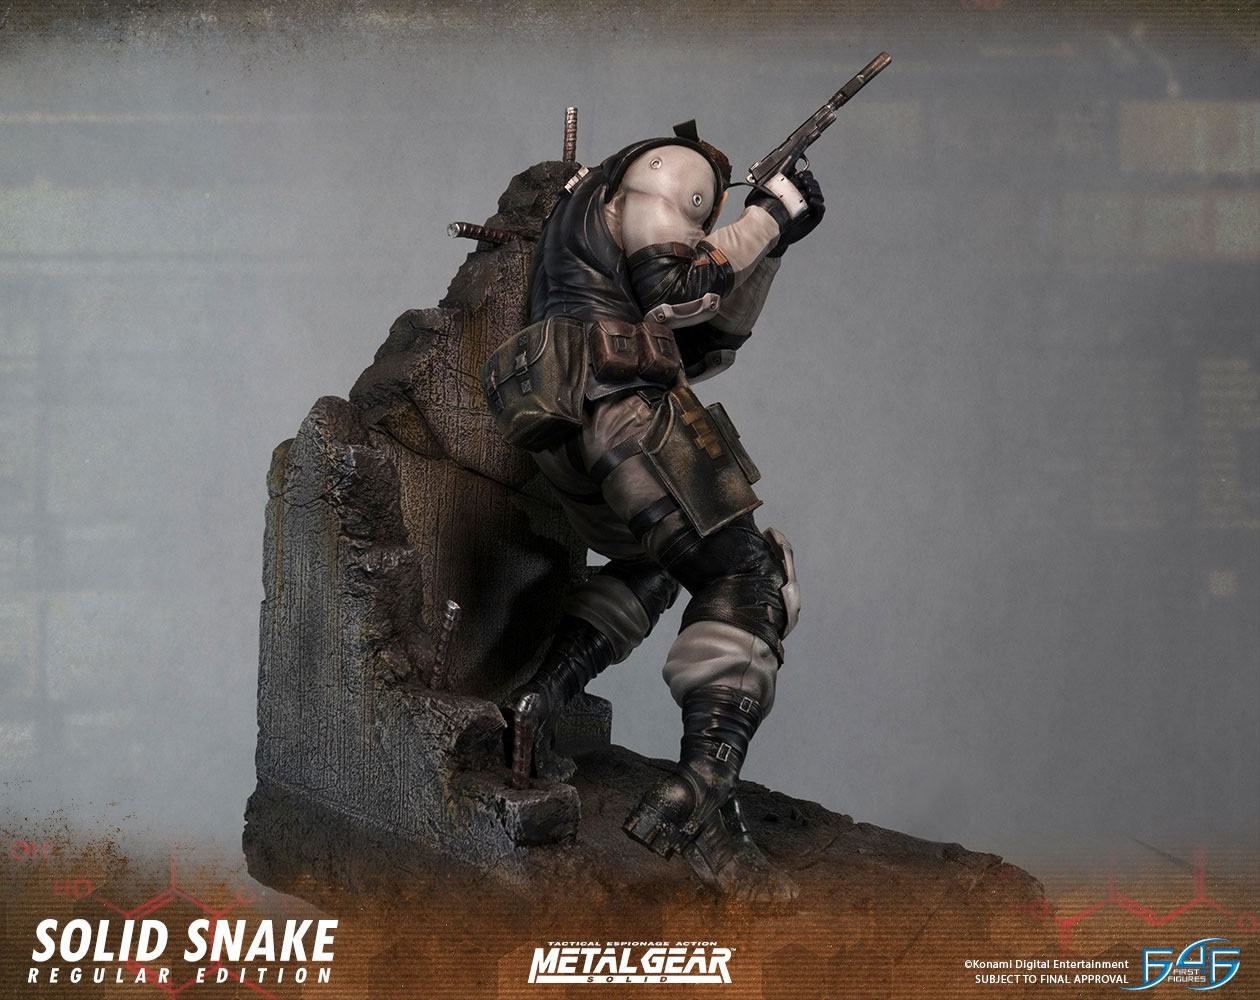 First4Figures dvoile une nouvelle statuette dtaille et imposante de Solid Snake